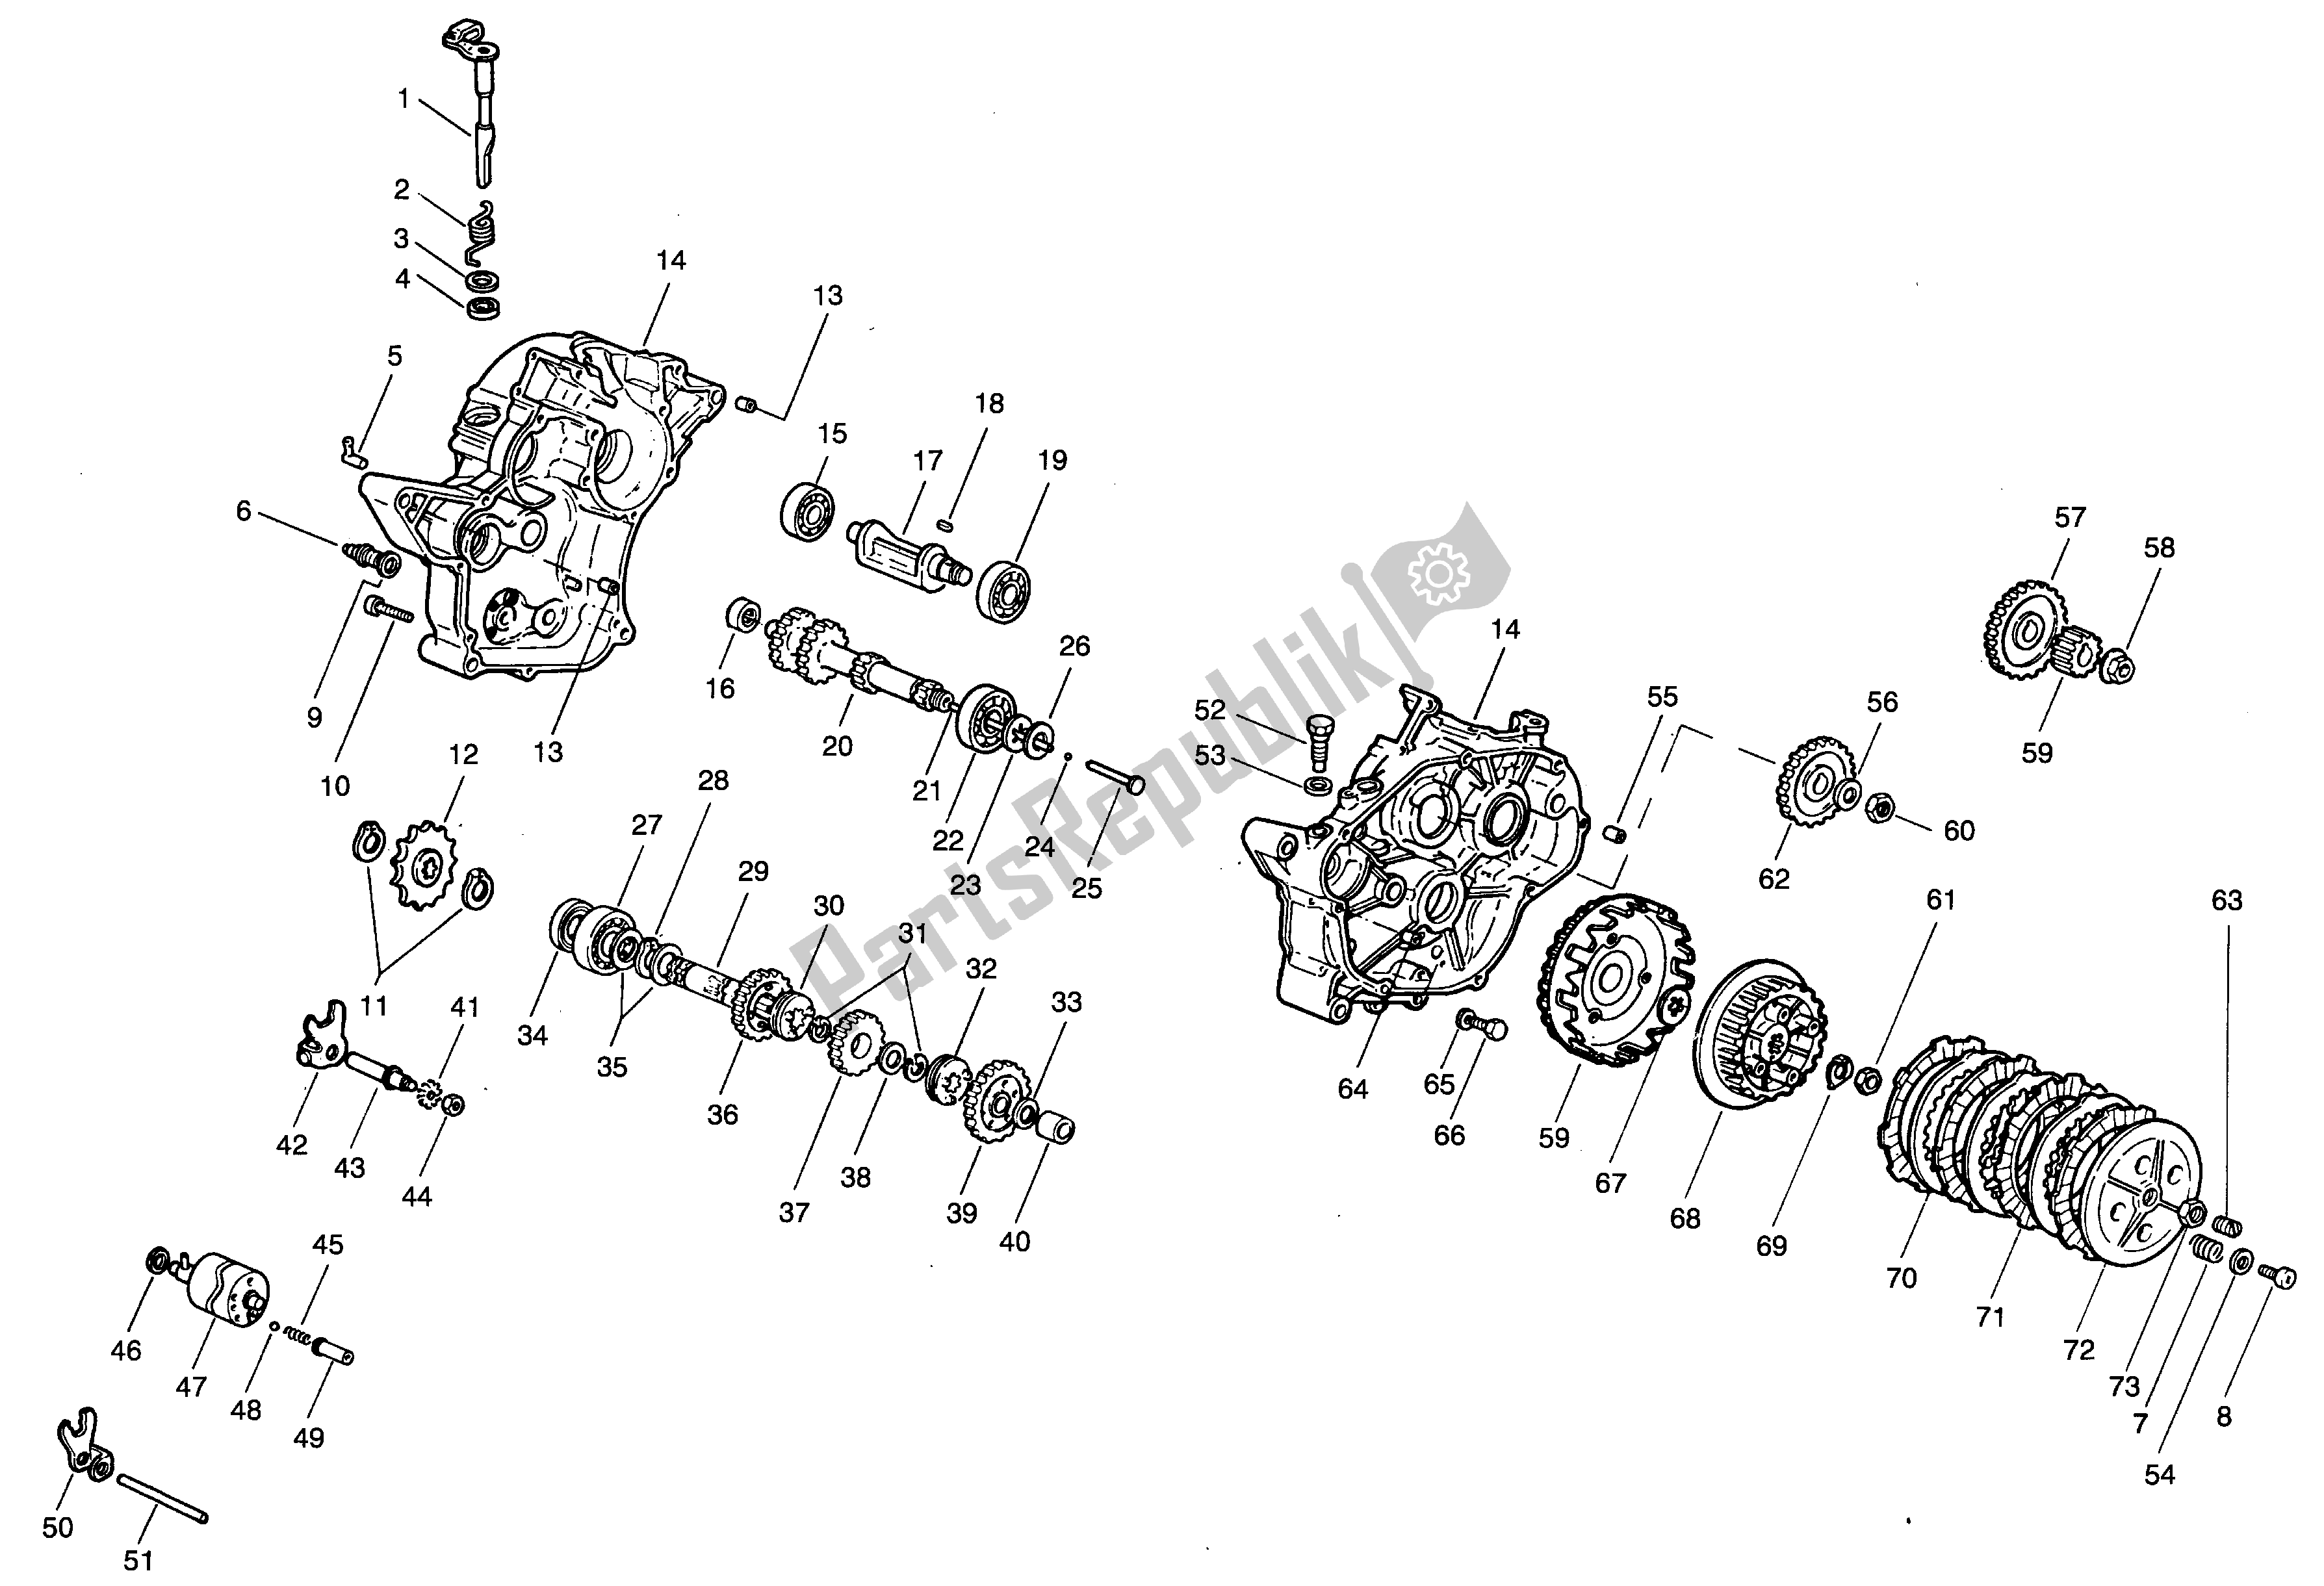 Toutes les pièces pour le Carter - Embrayage - Transmission du Aprilia Minarelli 50 1991 - 1999